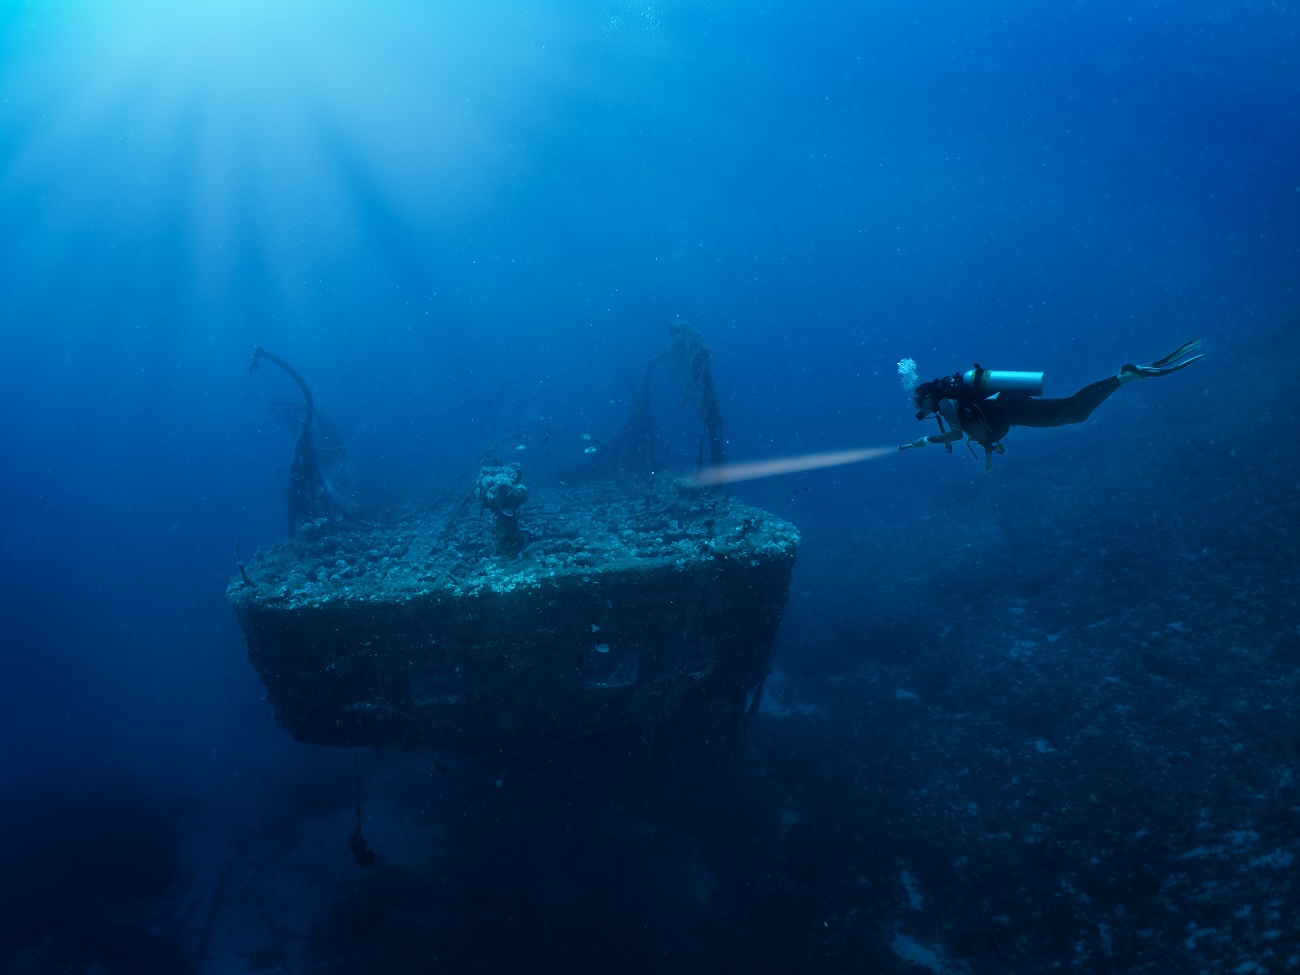 Tzia-Kea: Shipwrecks